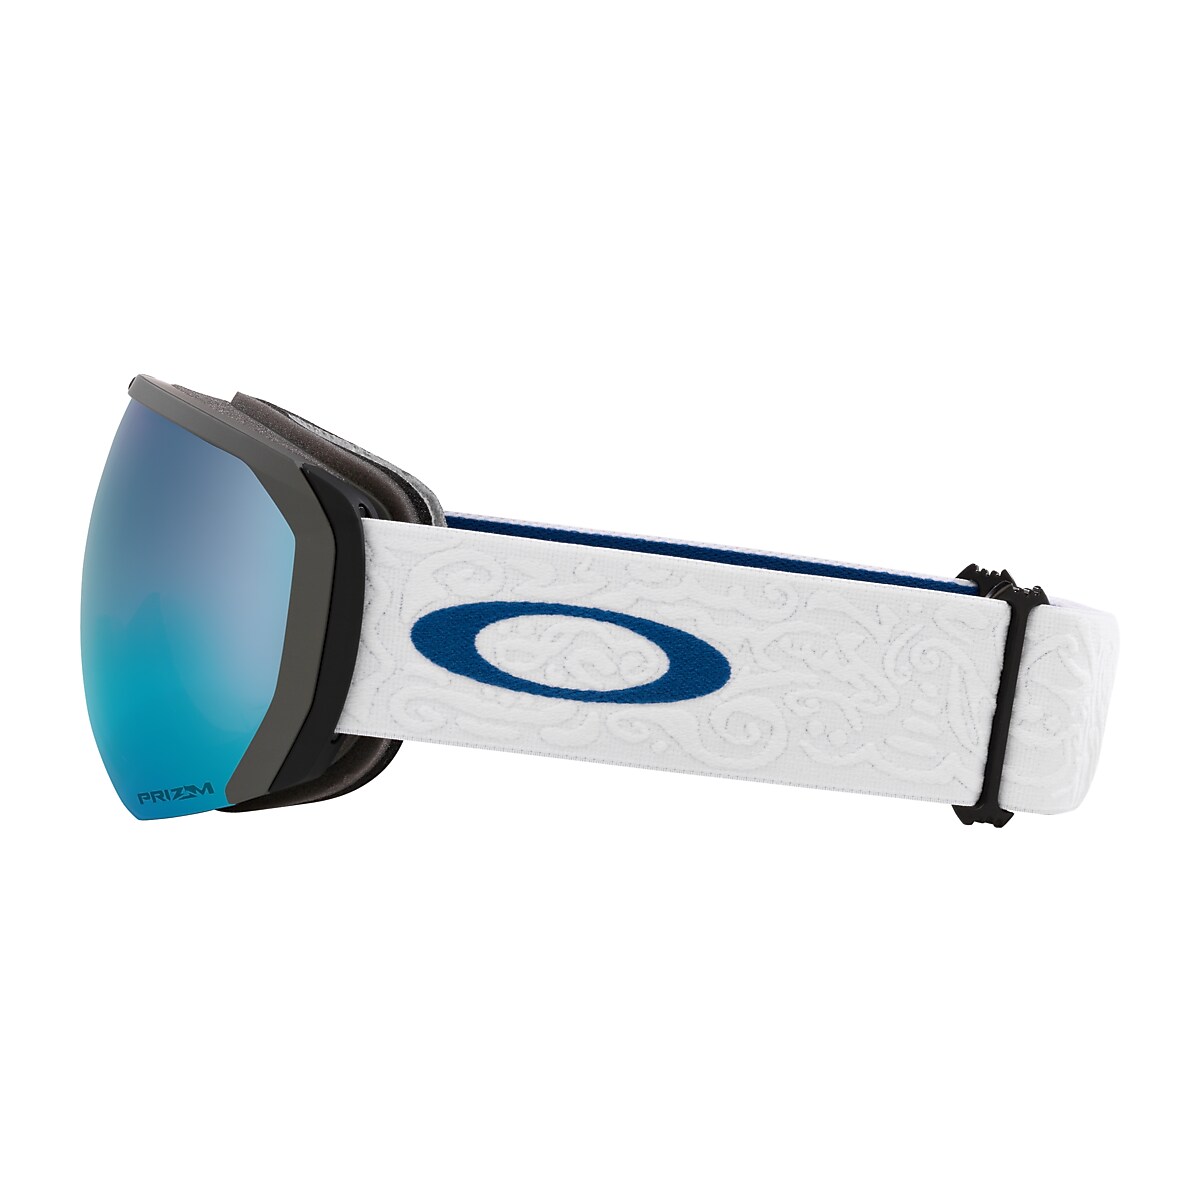 Lunettes de ski, lunettes de soleil oakley, lunettes glacier - Snowleader